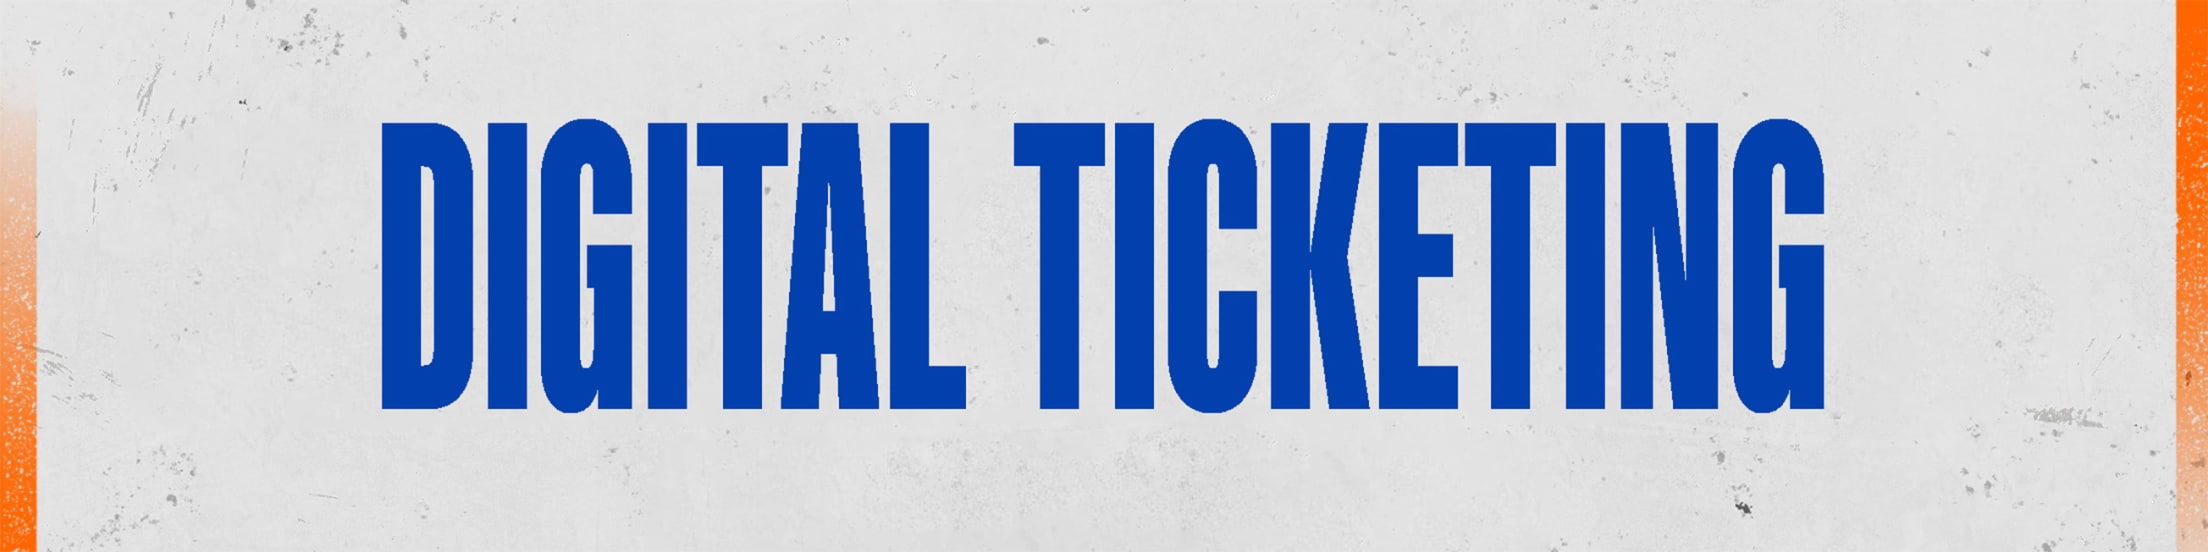 Mets Ticket Printable 